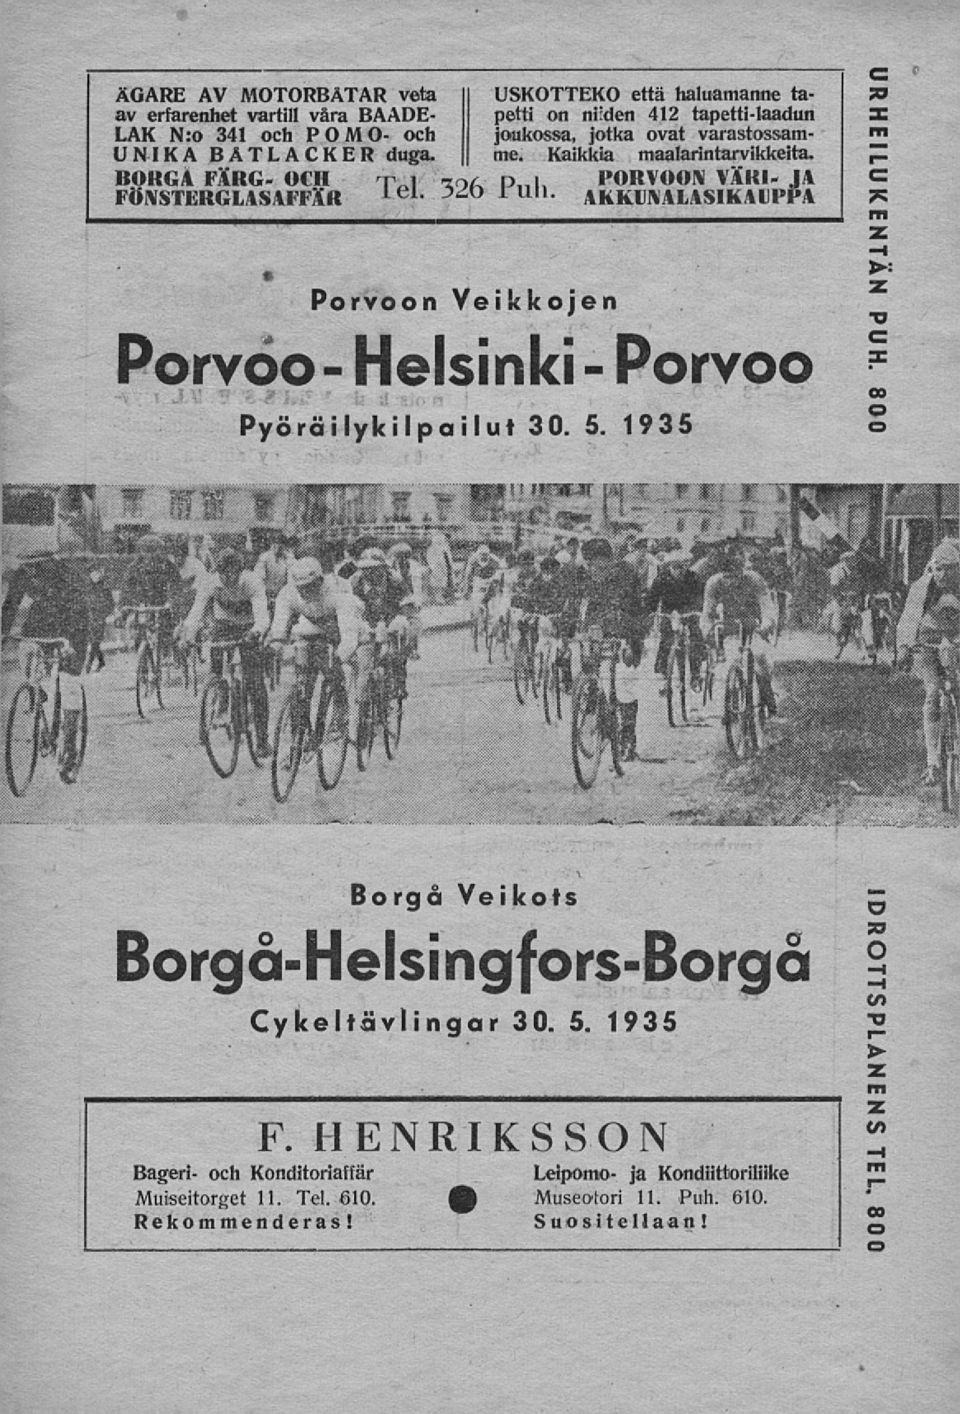 JA 4KKLNALASIKAIJPPA Porvoo - Porvoon Veikkojen Helsinki - Pyöräilykilpailut 30. 5. 1935 Porvoo PUH. 800 \ Borgå Veikots Borgå-Helsingfors-Borgå Cykeltävlingar 30. 5. 1935 I F.